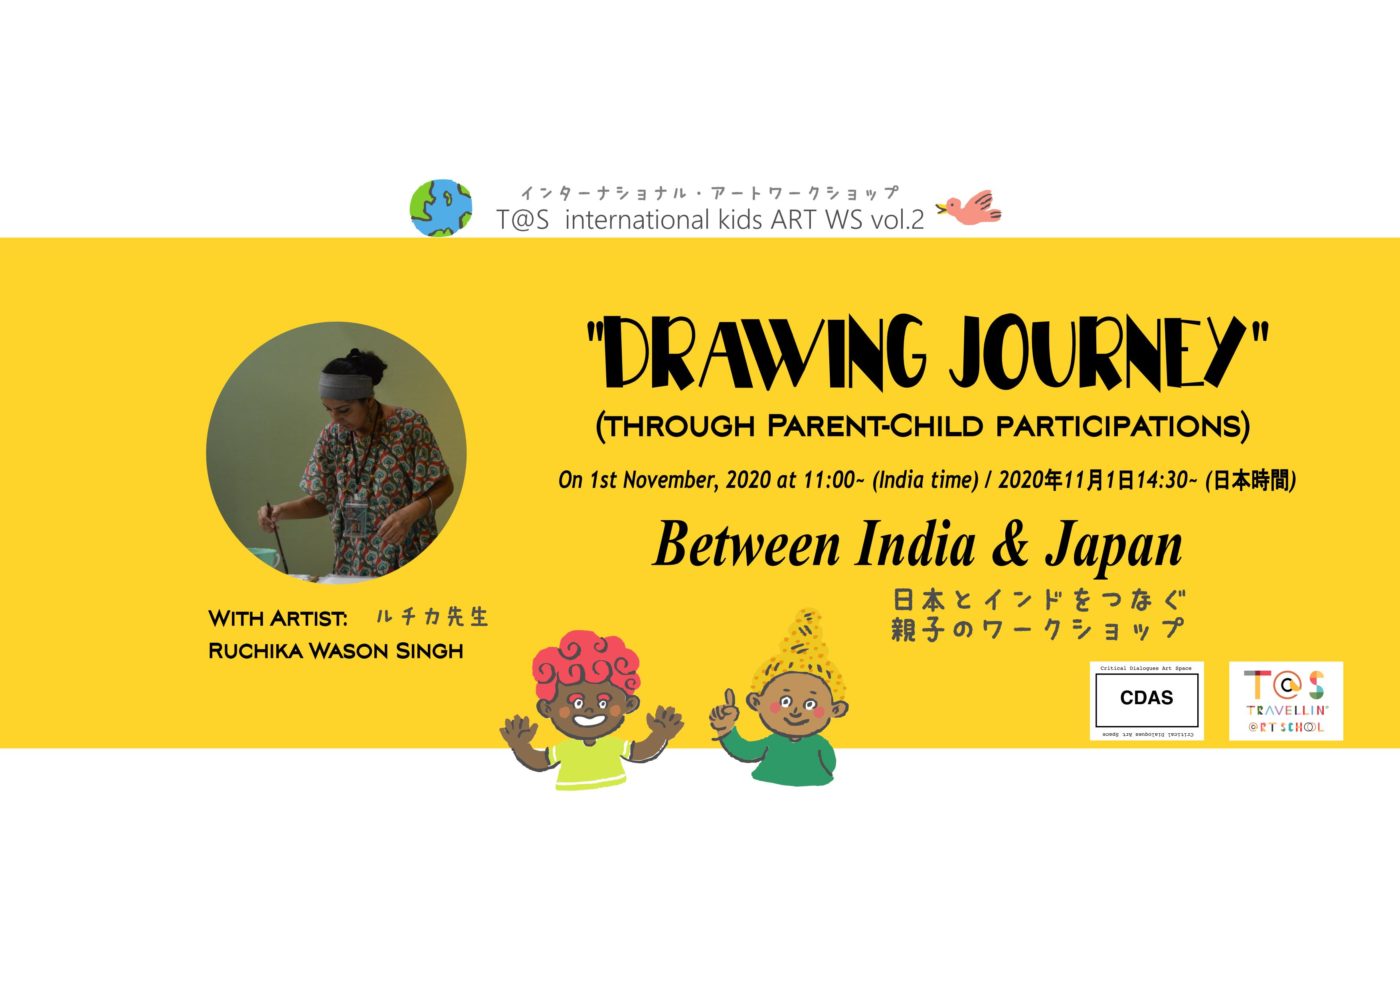 「旅」をテーマに海外と日本の子どもたちをつなぐオンラインワークショップ「Travellin’ @rt School」、第2回はインド人アーティストと絵本を制作。